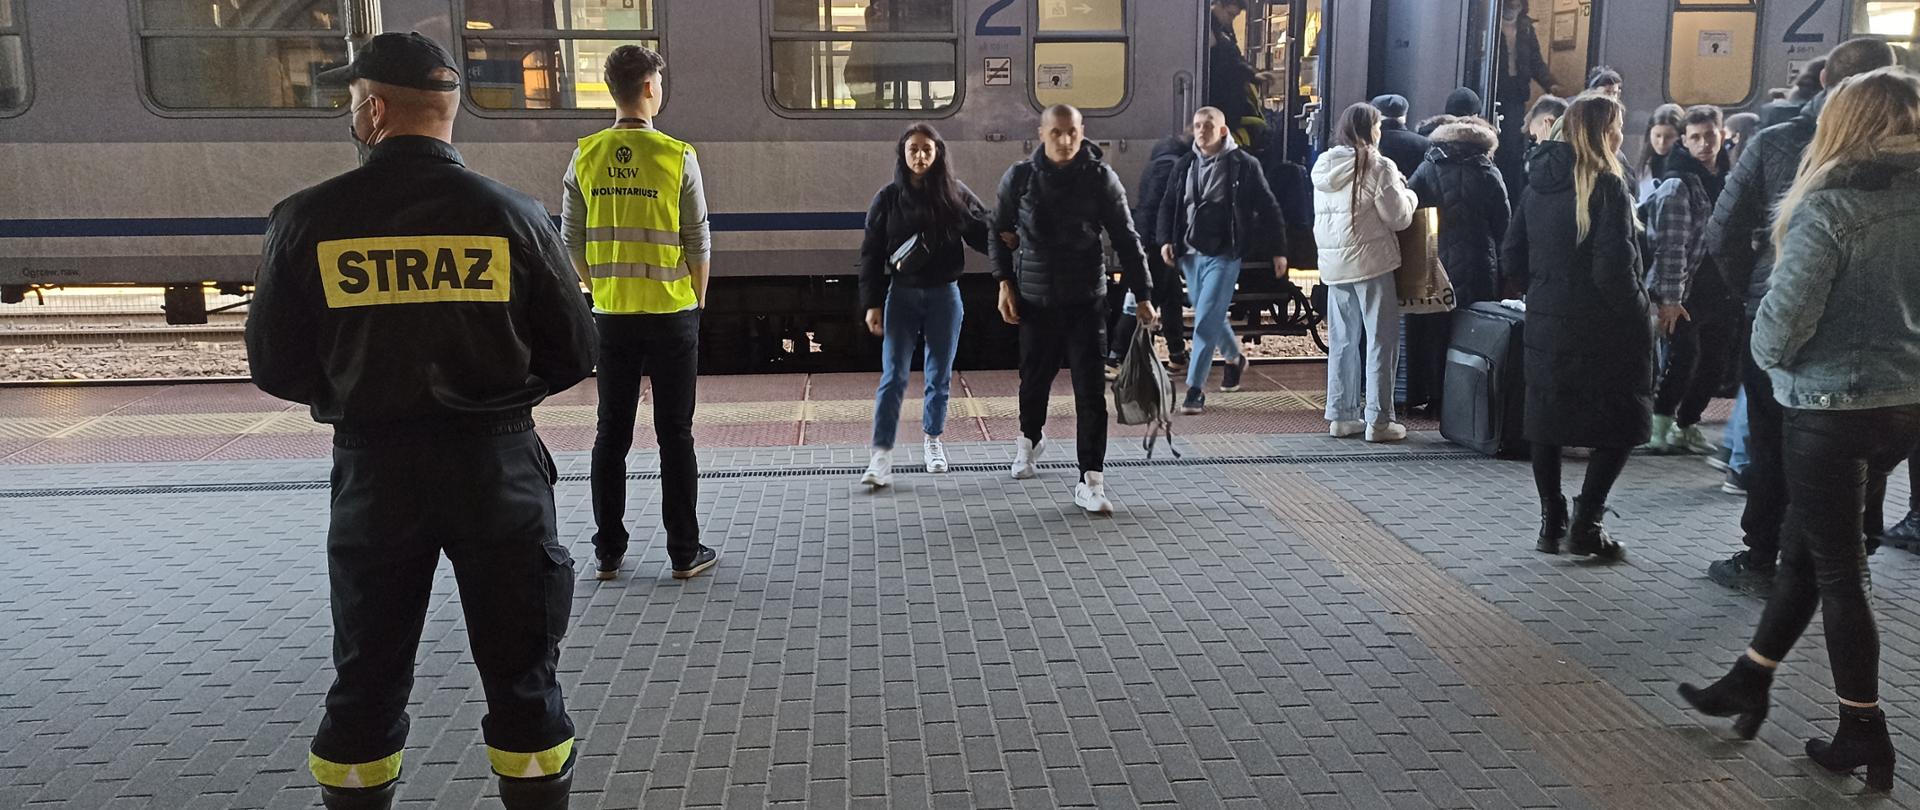 Z lewej strażak PSP w czarnym ubraniu koszarowym, Strażak stoi tyłem do osoby robiącej zdjęcie, a przodem do pociągu stojącego na peronie, z pociągu wysiada kilka osób, głównie kobiety. 